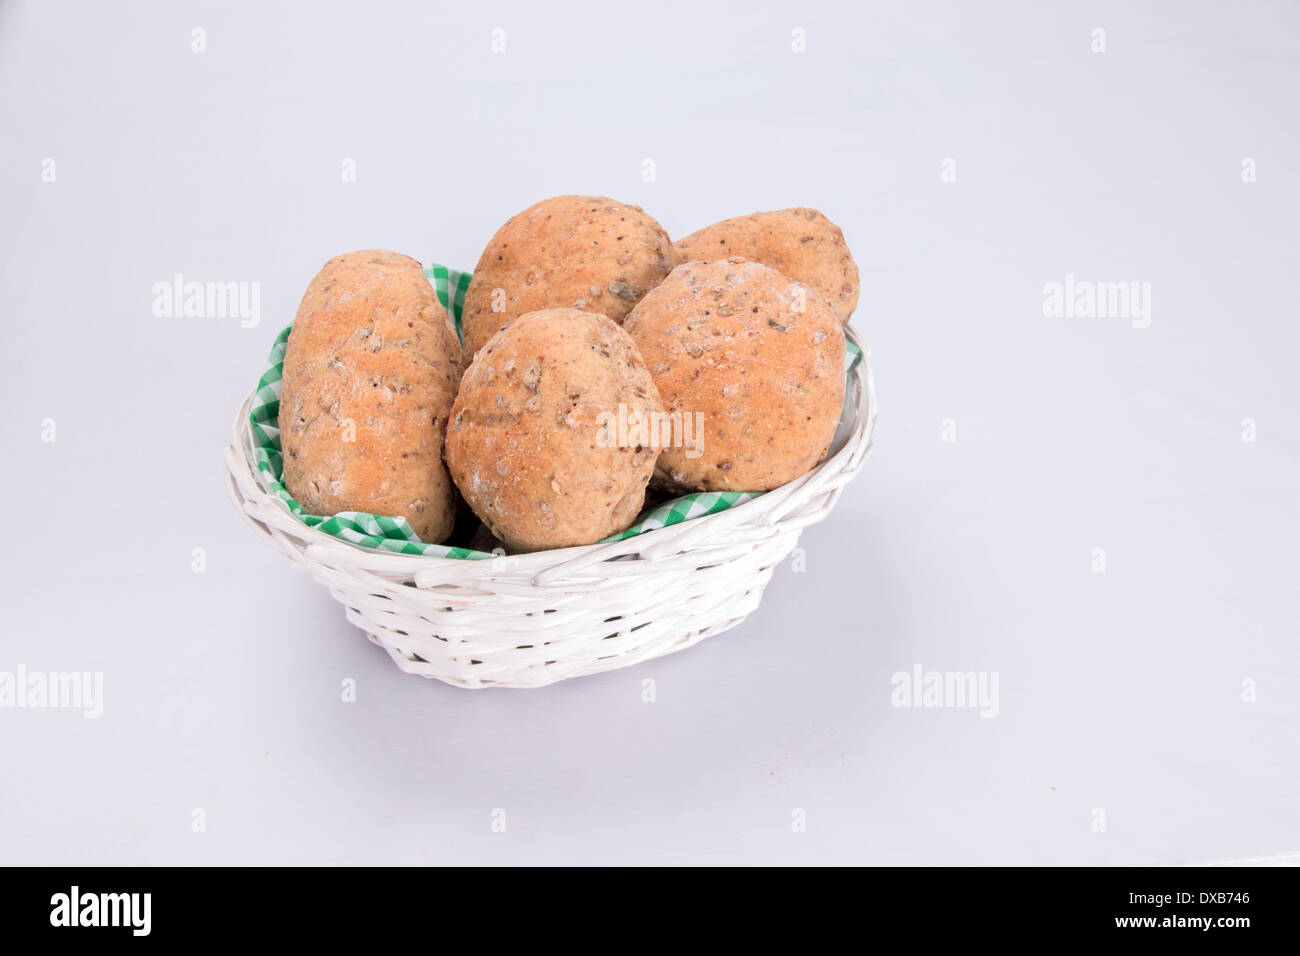 Granaio/seminate integrale ciambelle di pane/torte/baps in un cestino foderato con una verde e bianco a scacchi igienico (12 di 15) Foto Stock